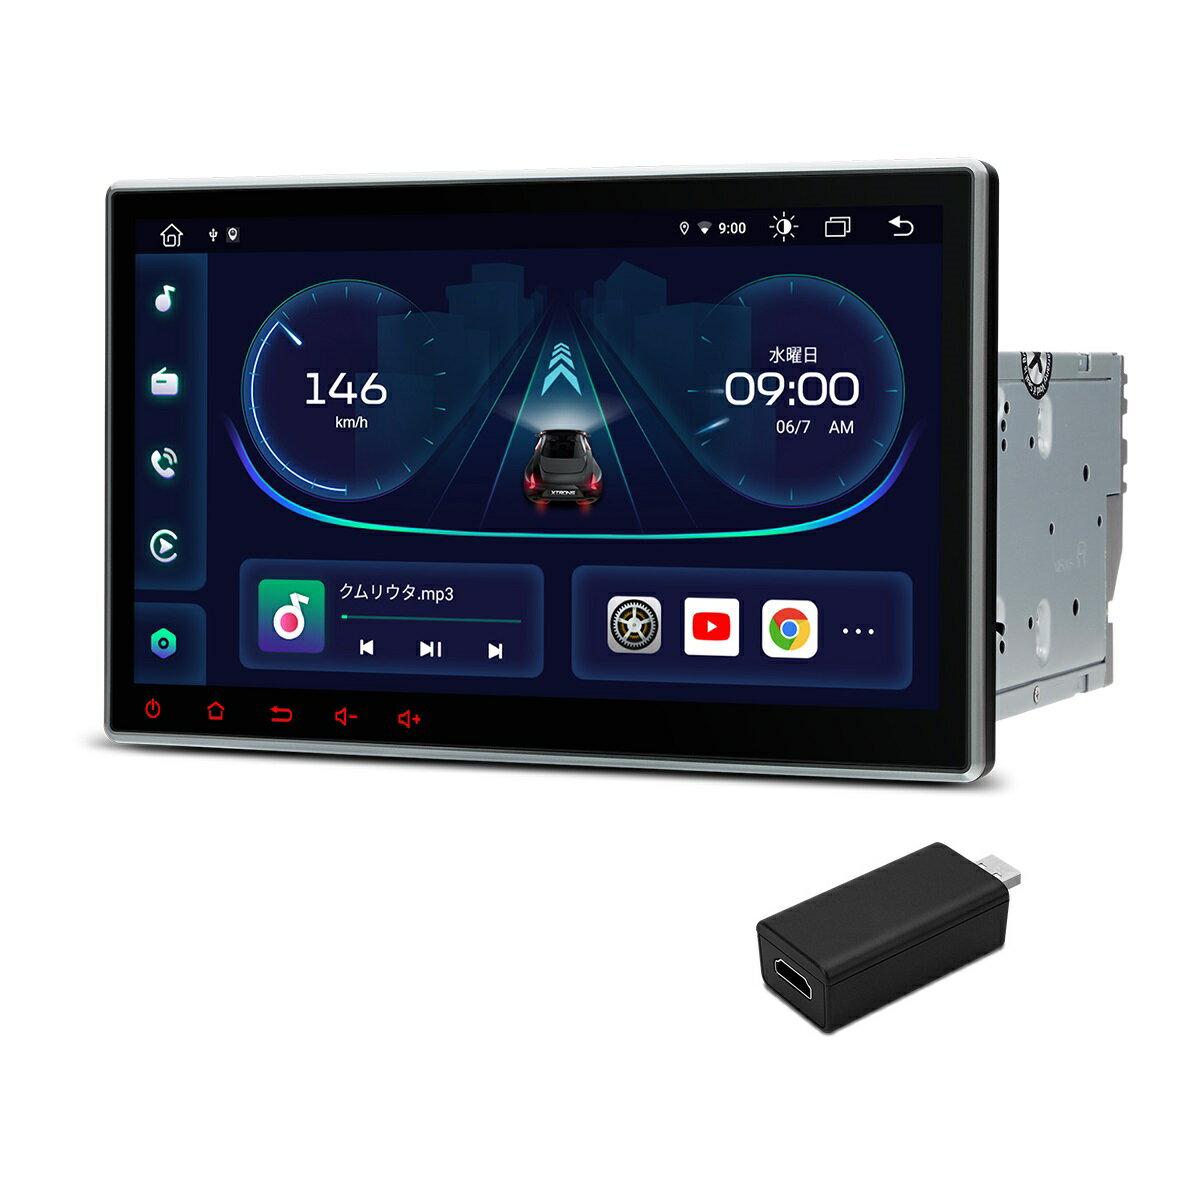 楽天XTRONS マイカーライフ専門店（TIE124-HDMI）XTRONS カーナビ 2DIN Android12 車載PC 10.1インチ 大画面 8コア DVDプレーヤー 4G通信 SIM対応 カーオーディオ Bluetooth iPhone CarPlay対応 android auto対応 ミラーリング WiFi マルチウインドウ HDMI出力変換器付